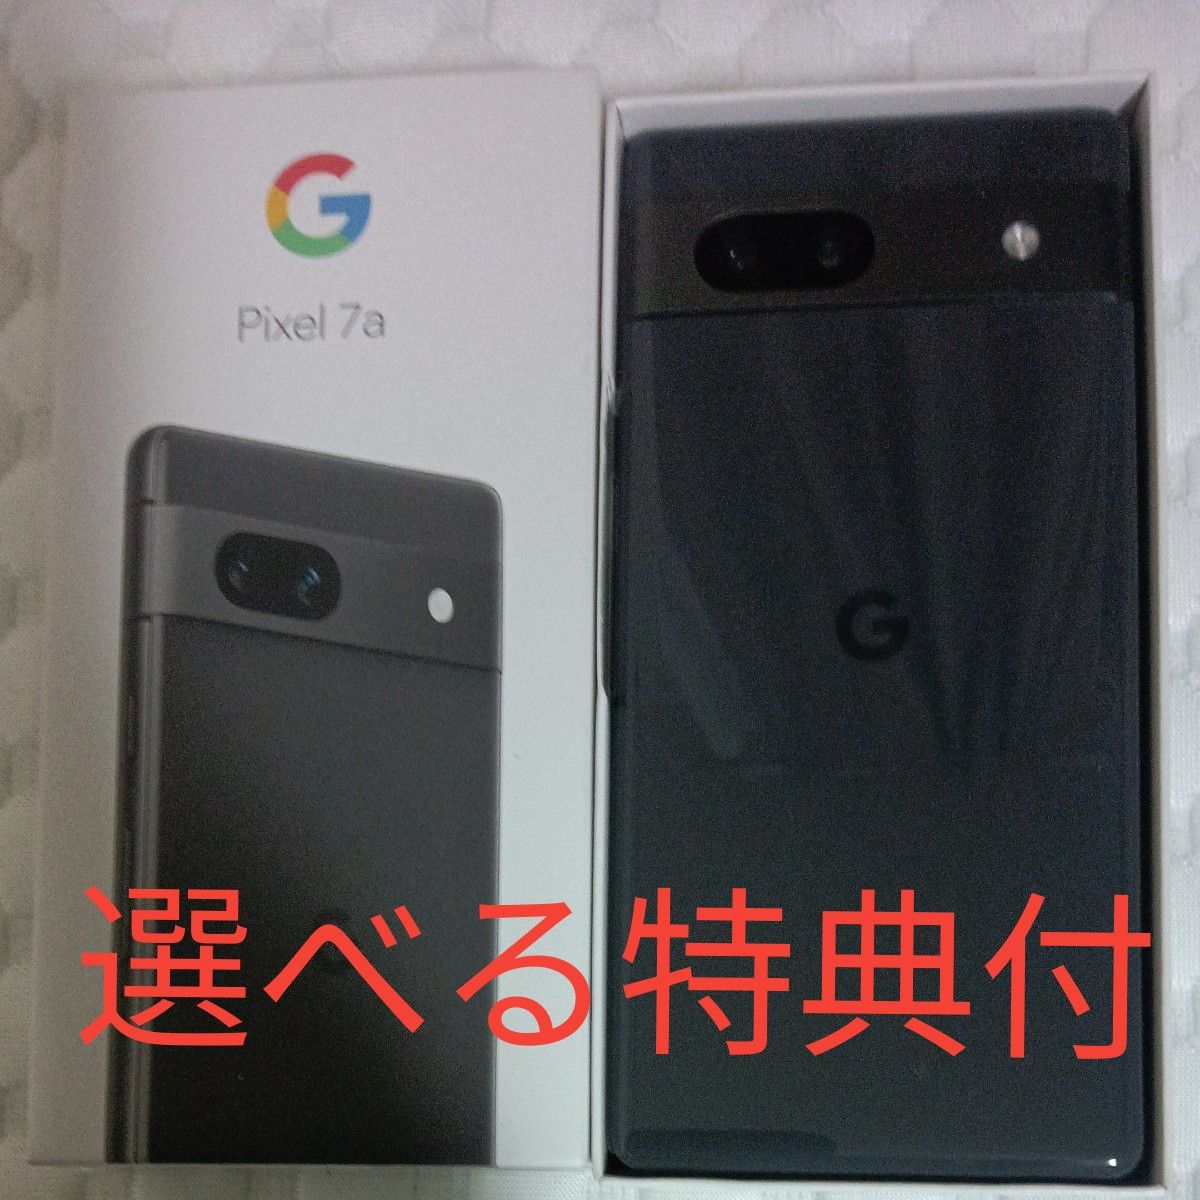 特典付★Google Pixel 7a Charcoal チャコール(ブラック/グレー系)SIMフリーAndroidスマートフォン